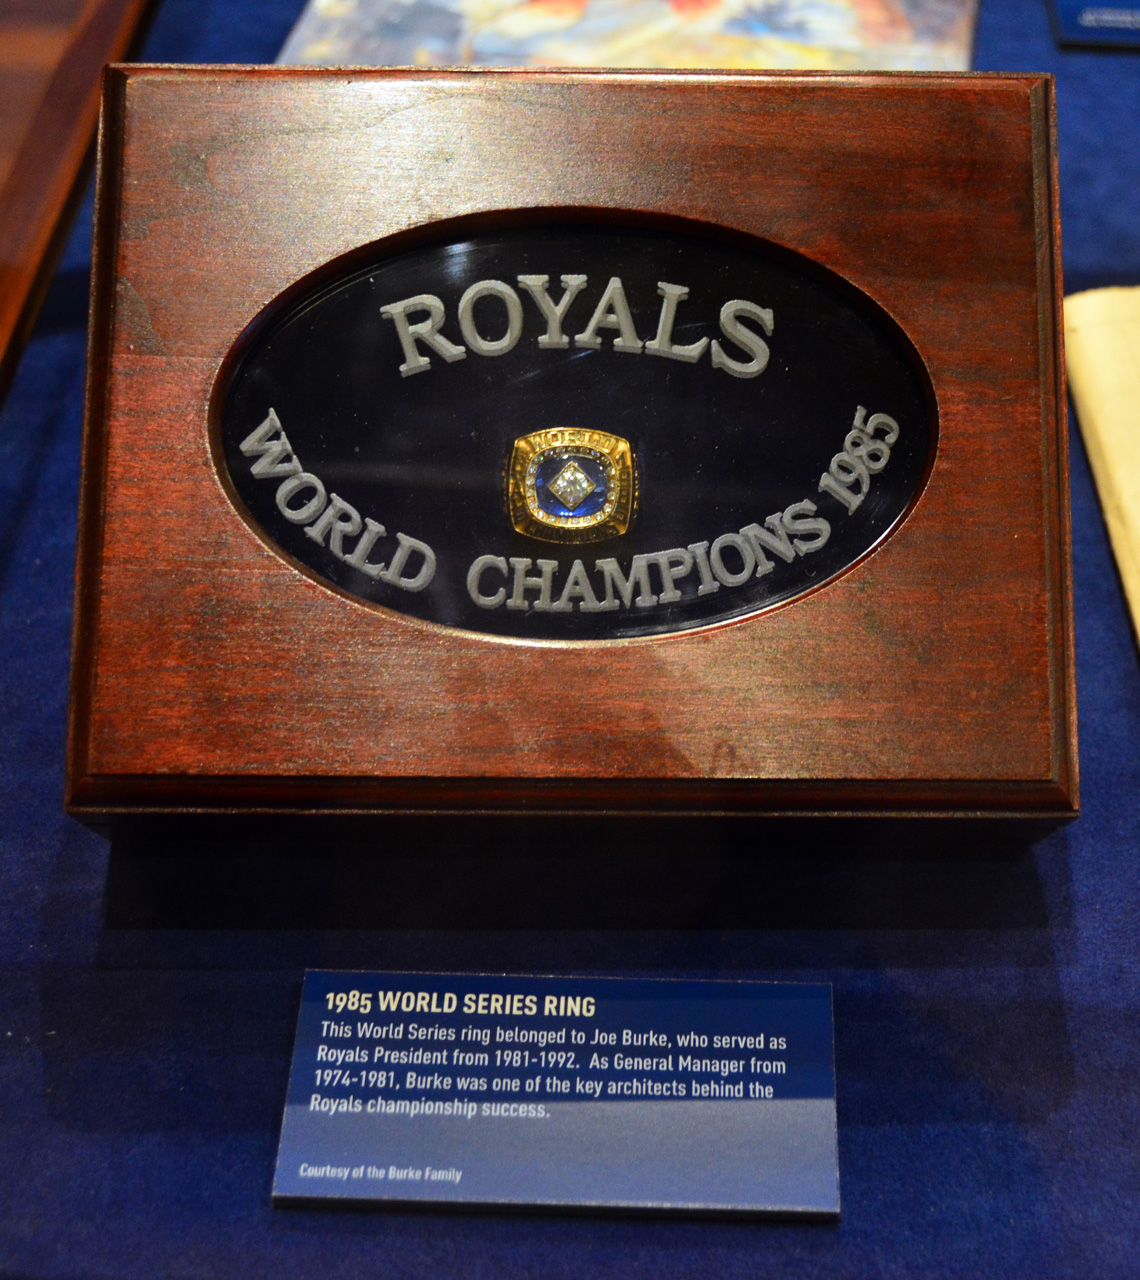 2014-09-09, 008, KS Royals Hall of Fame, KS, MO